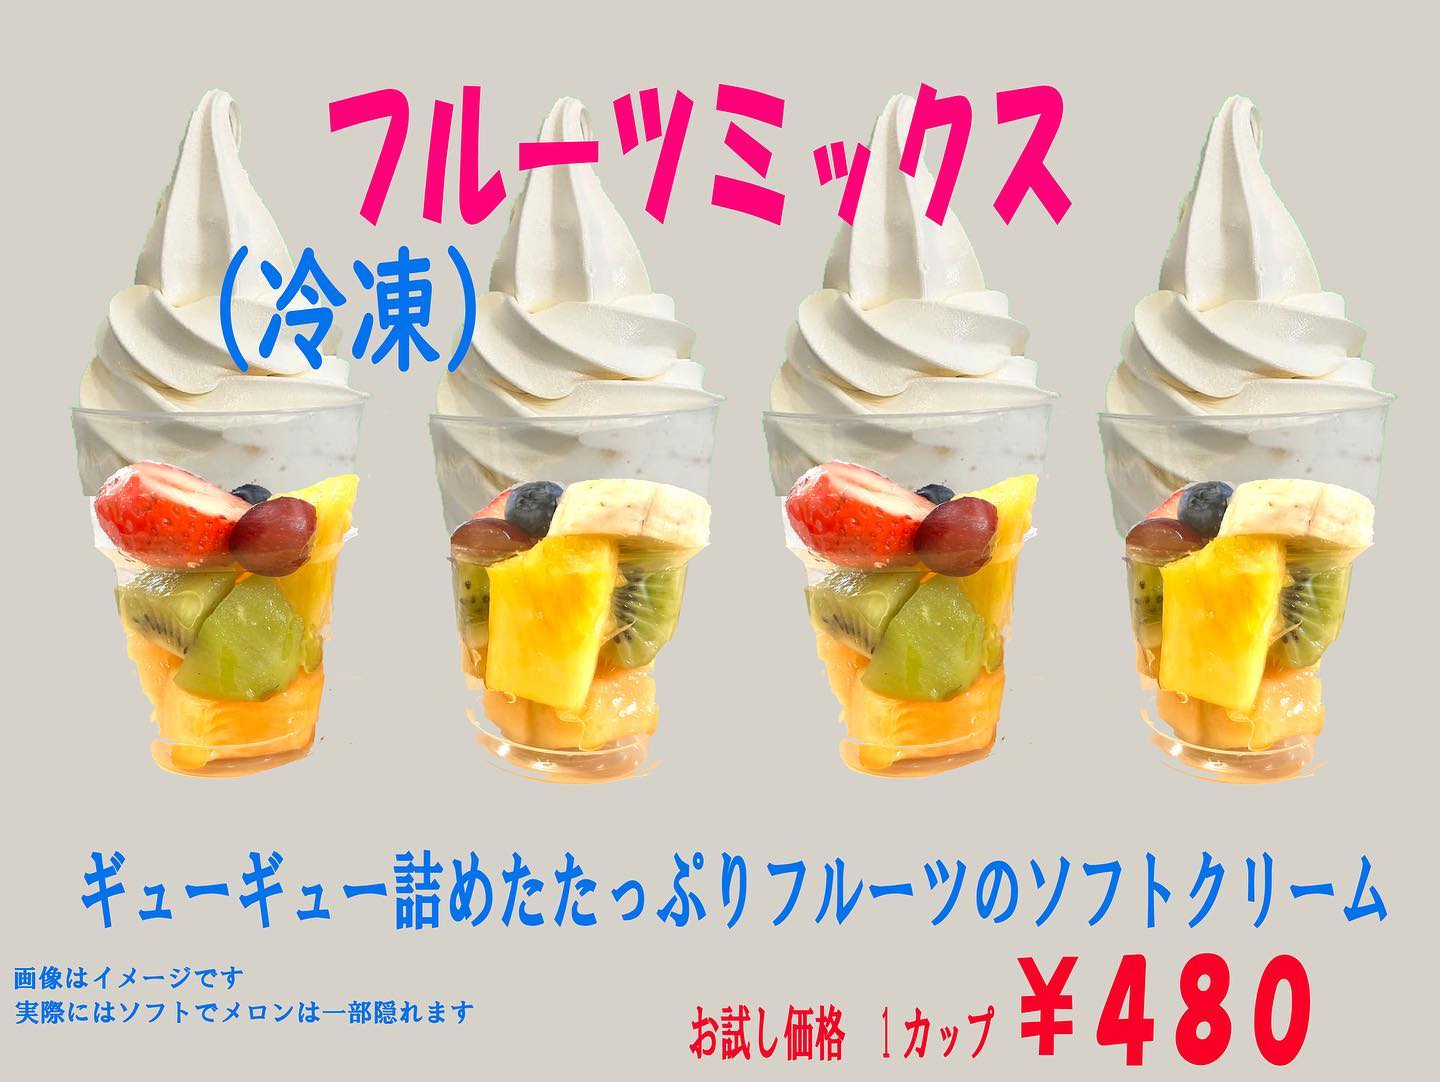 【新発売️】
フローズンフルーツソフトクリームに
MIXフルーツ新登場〜️
フルーツ凍っています